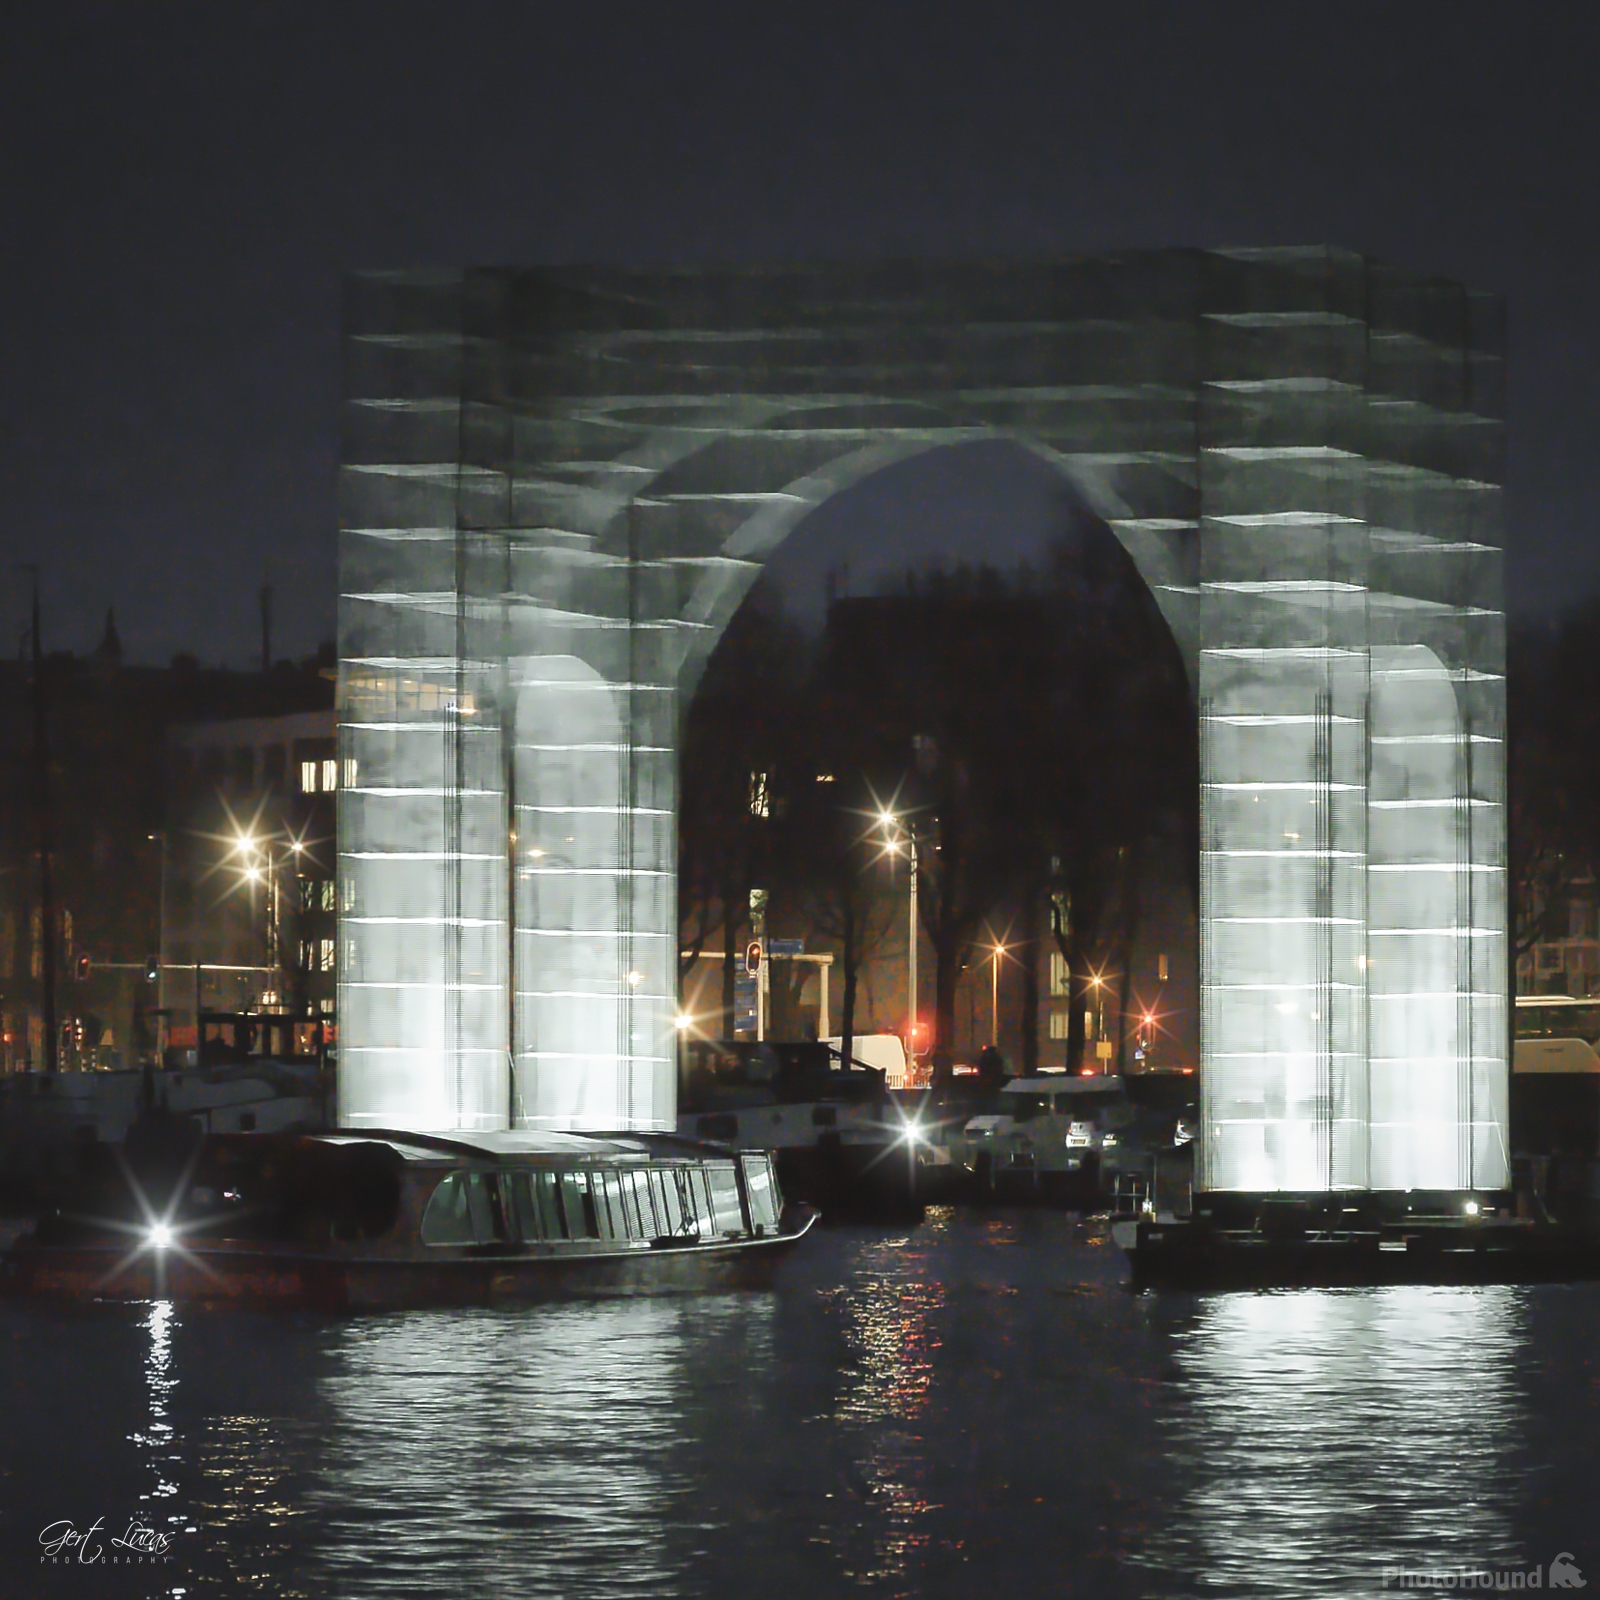 Image of Amsterdam Light Festival by Gert Lucas